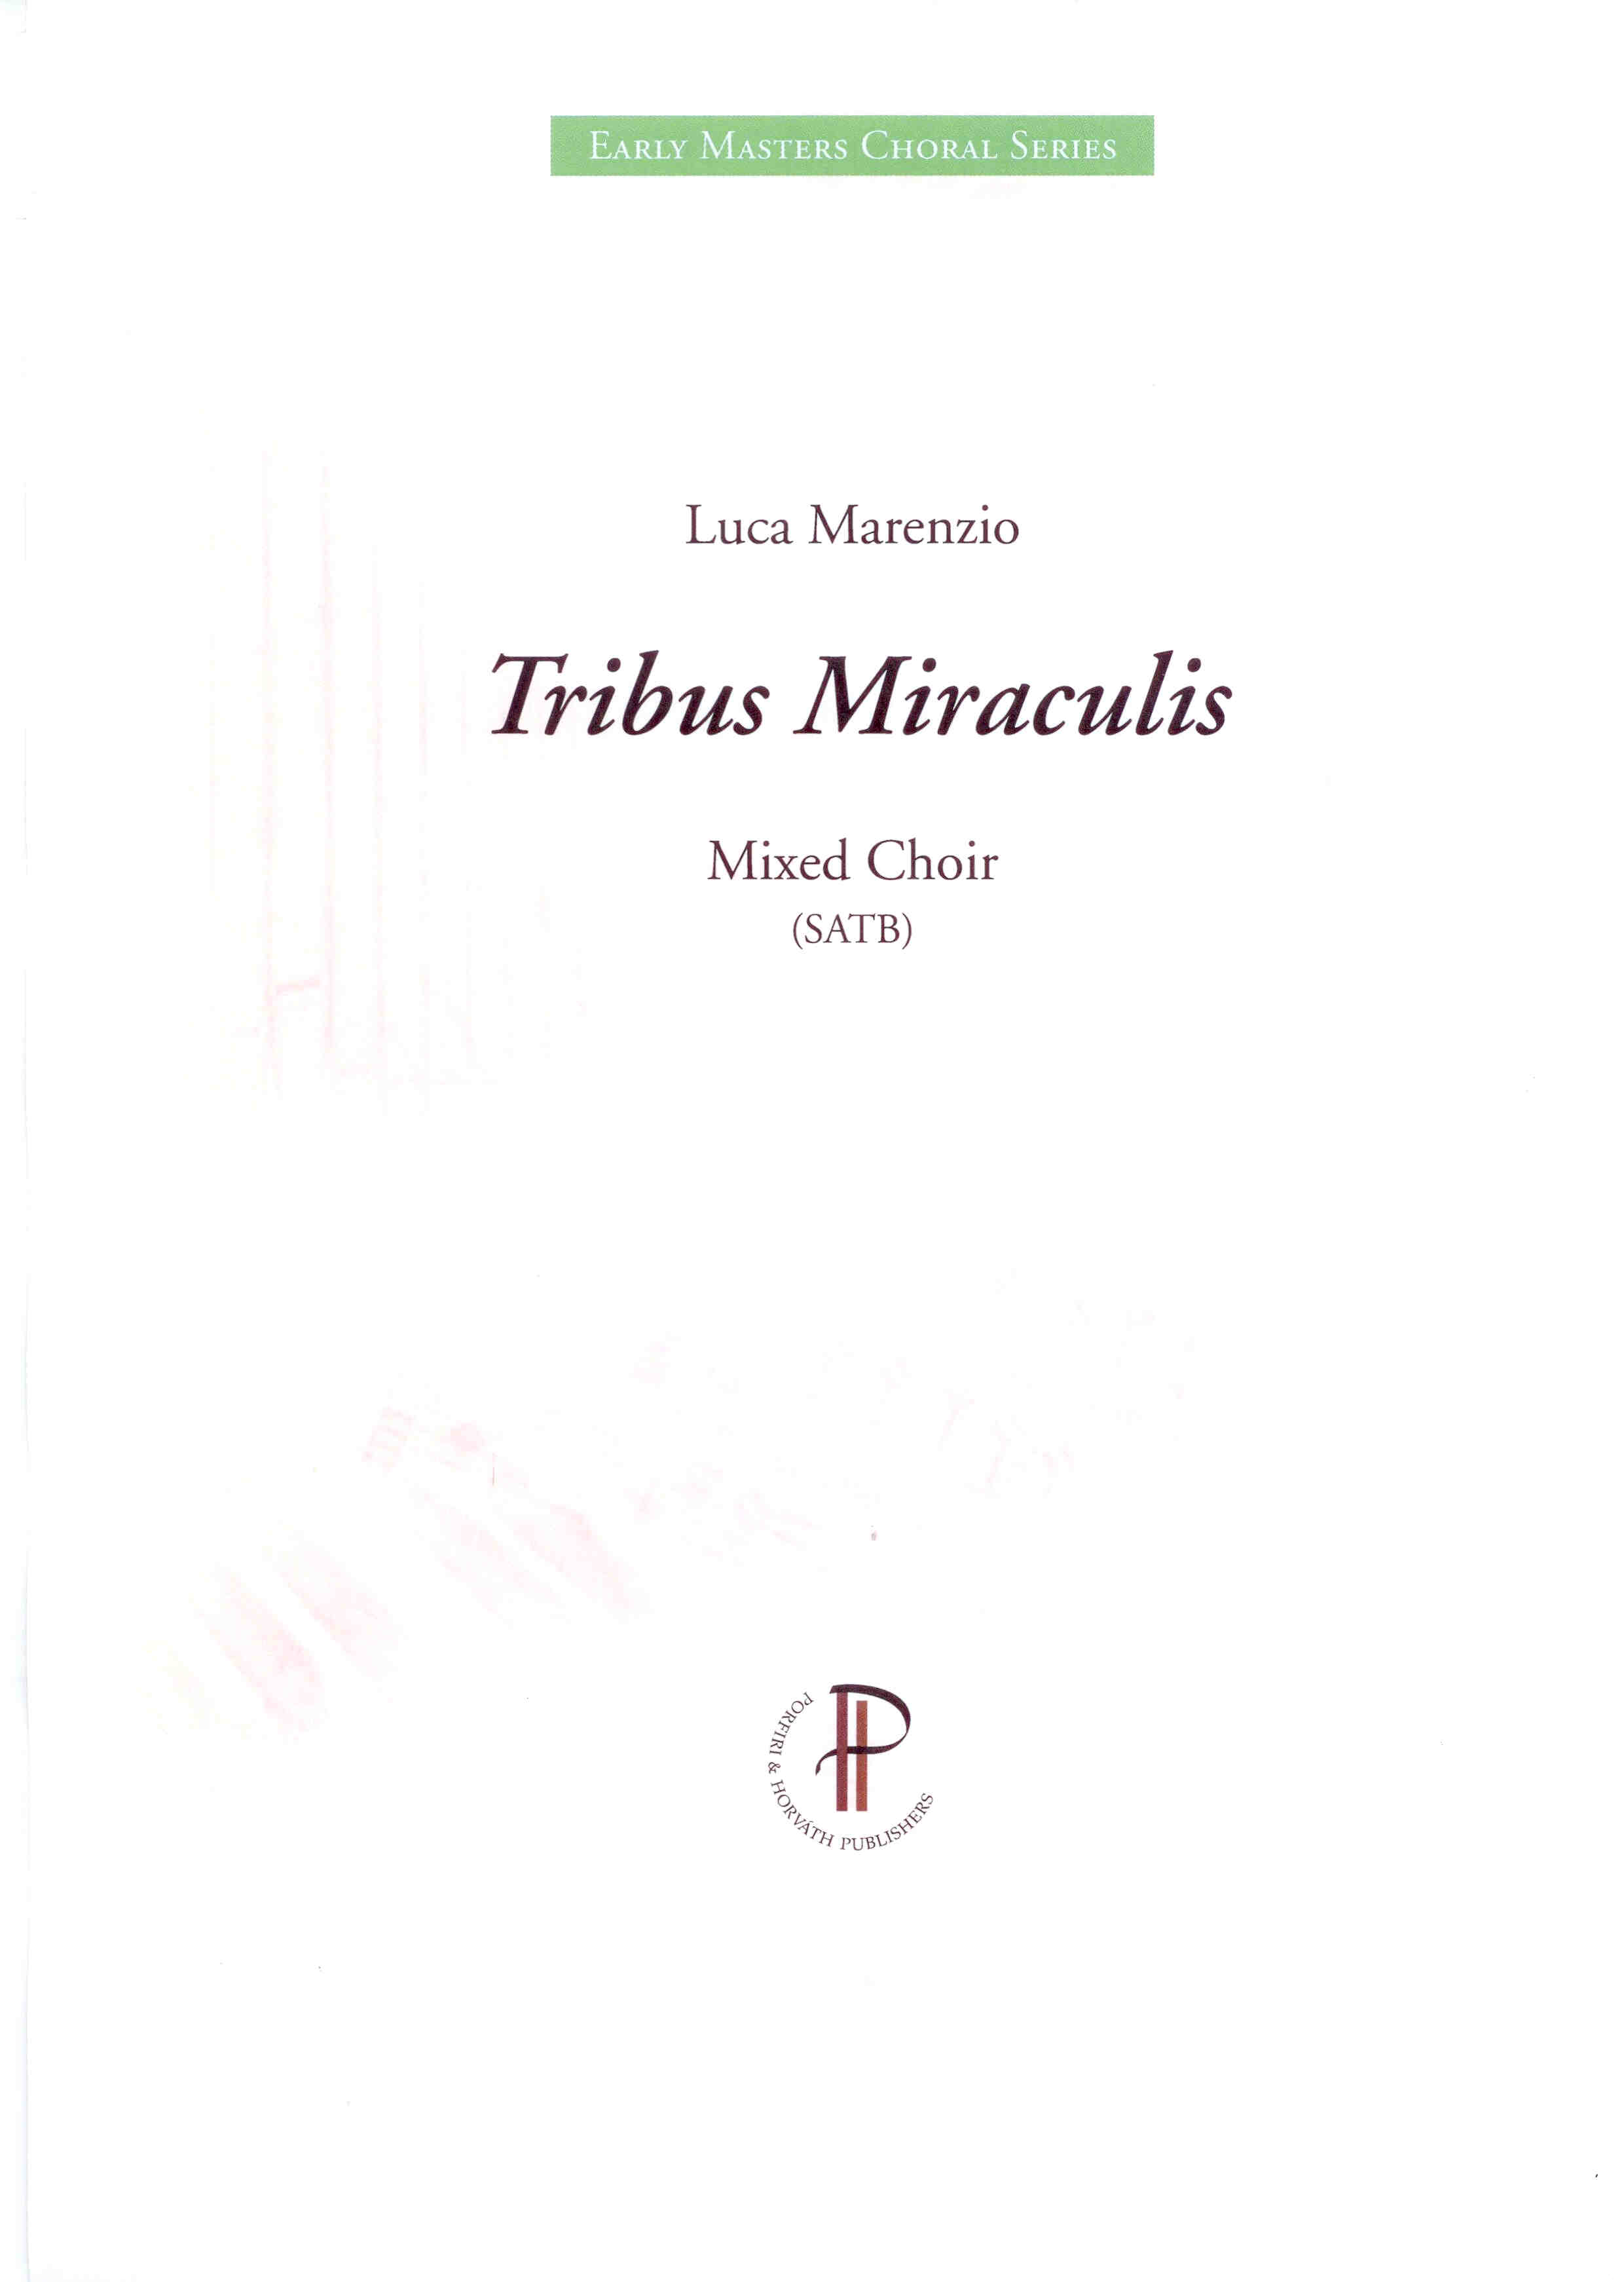 Tribus Miraculis - Show sample score